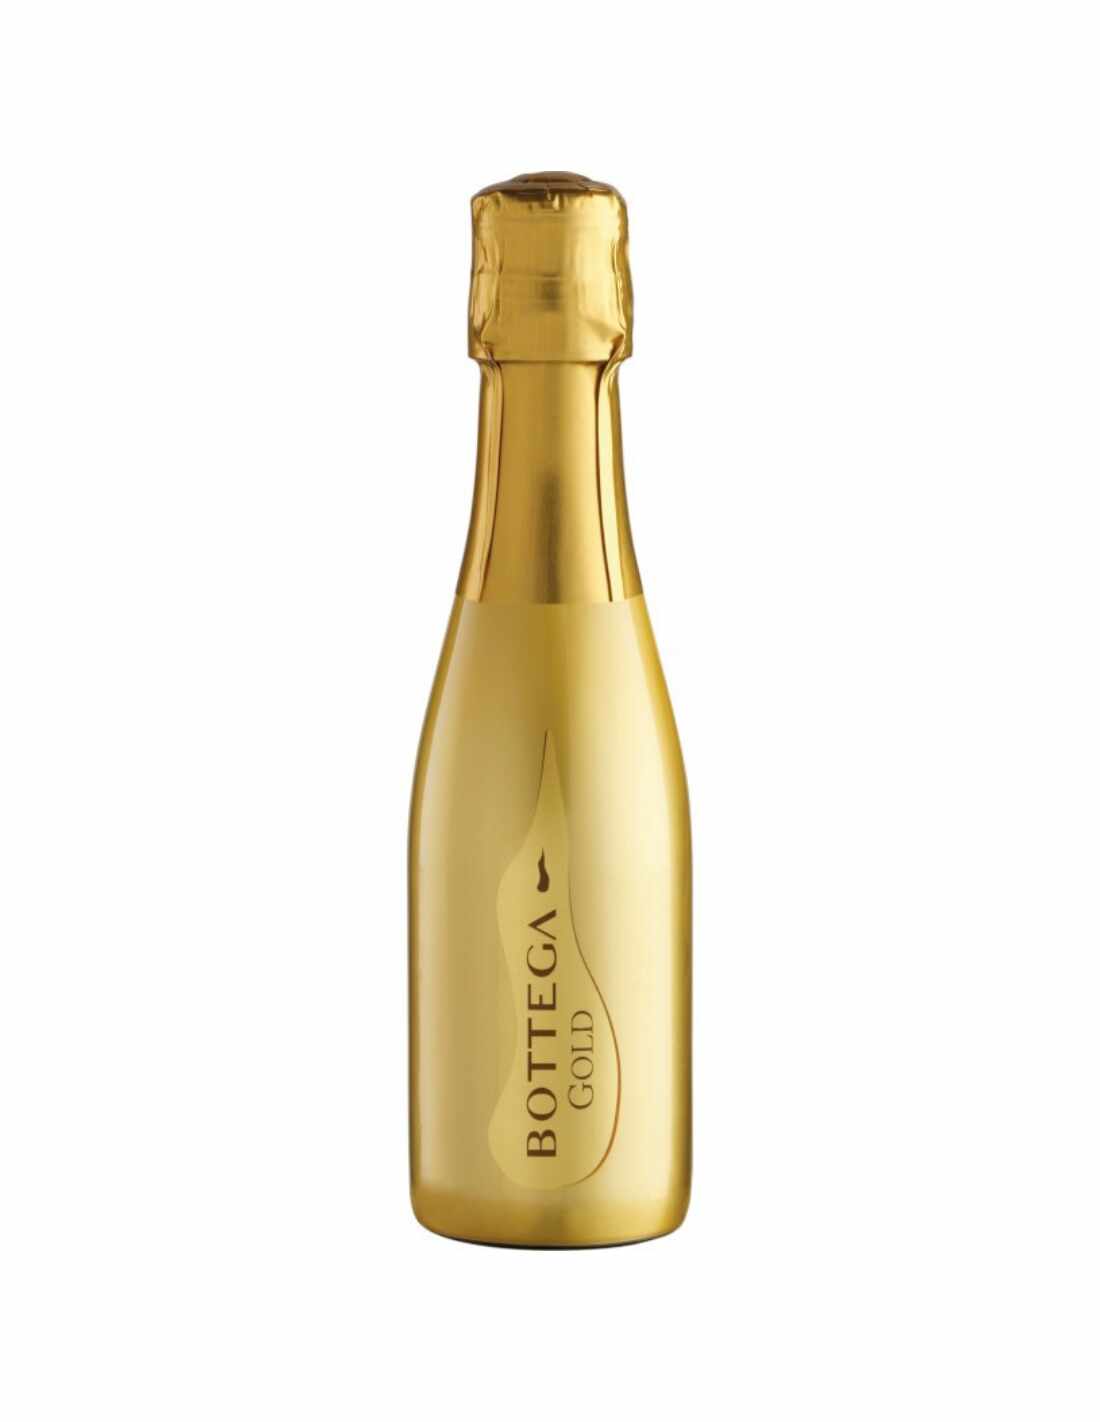 Vin prosecco, Bottega Gold, 0.2L, 11% alc., Italia